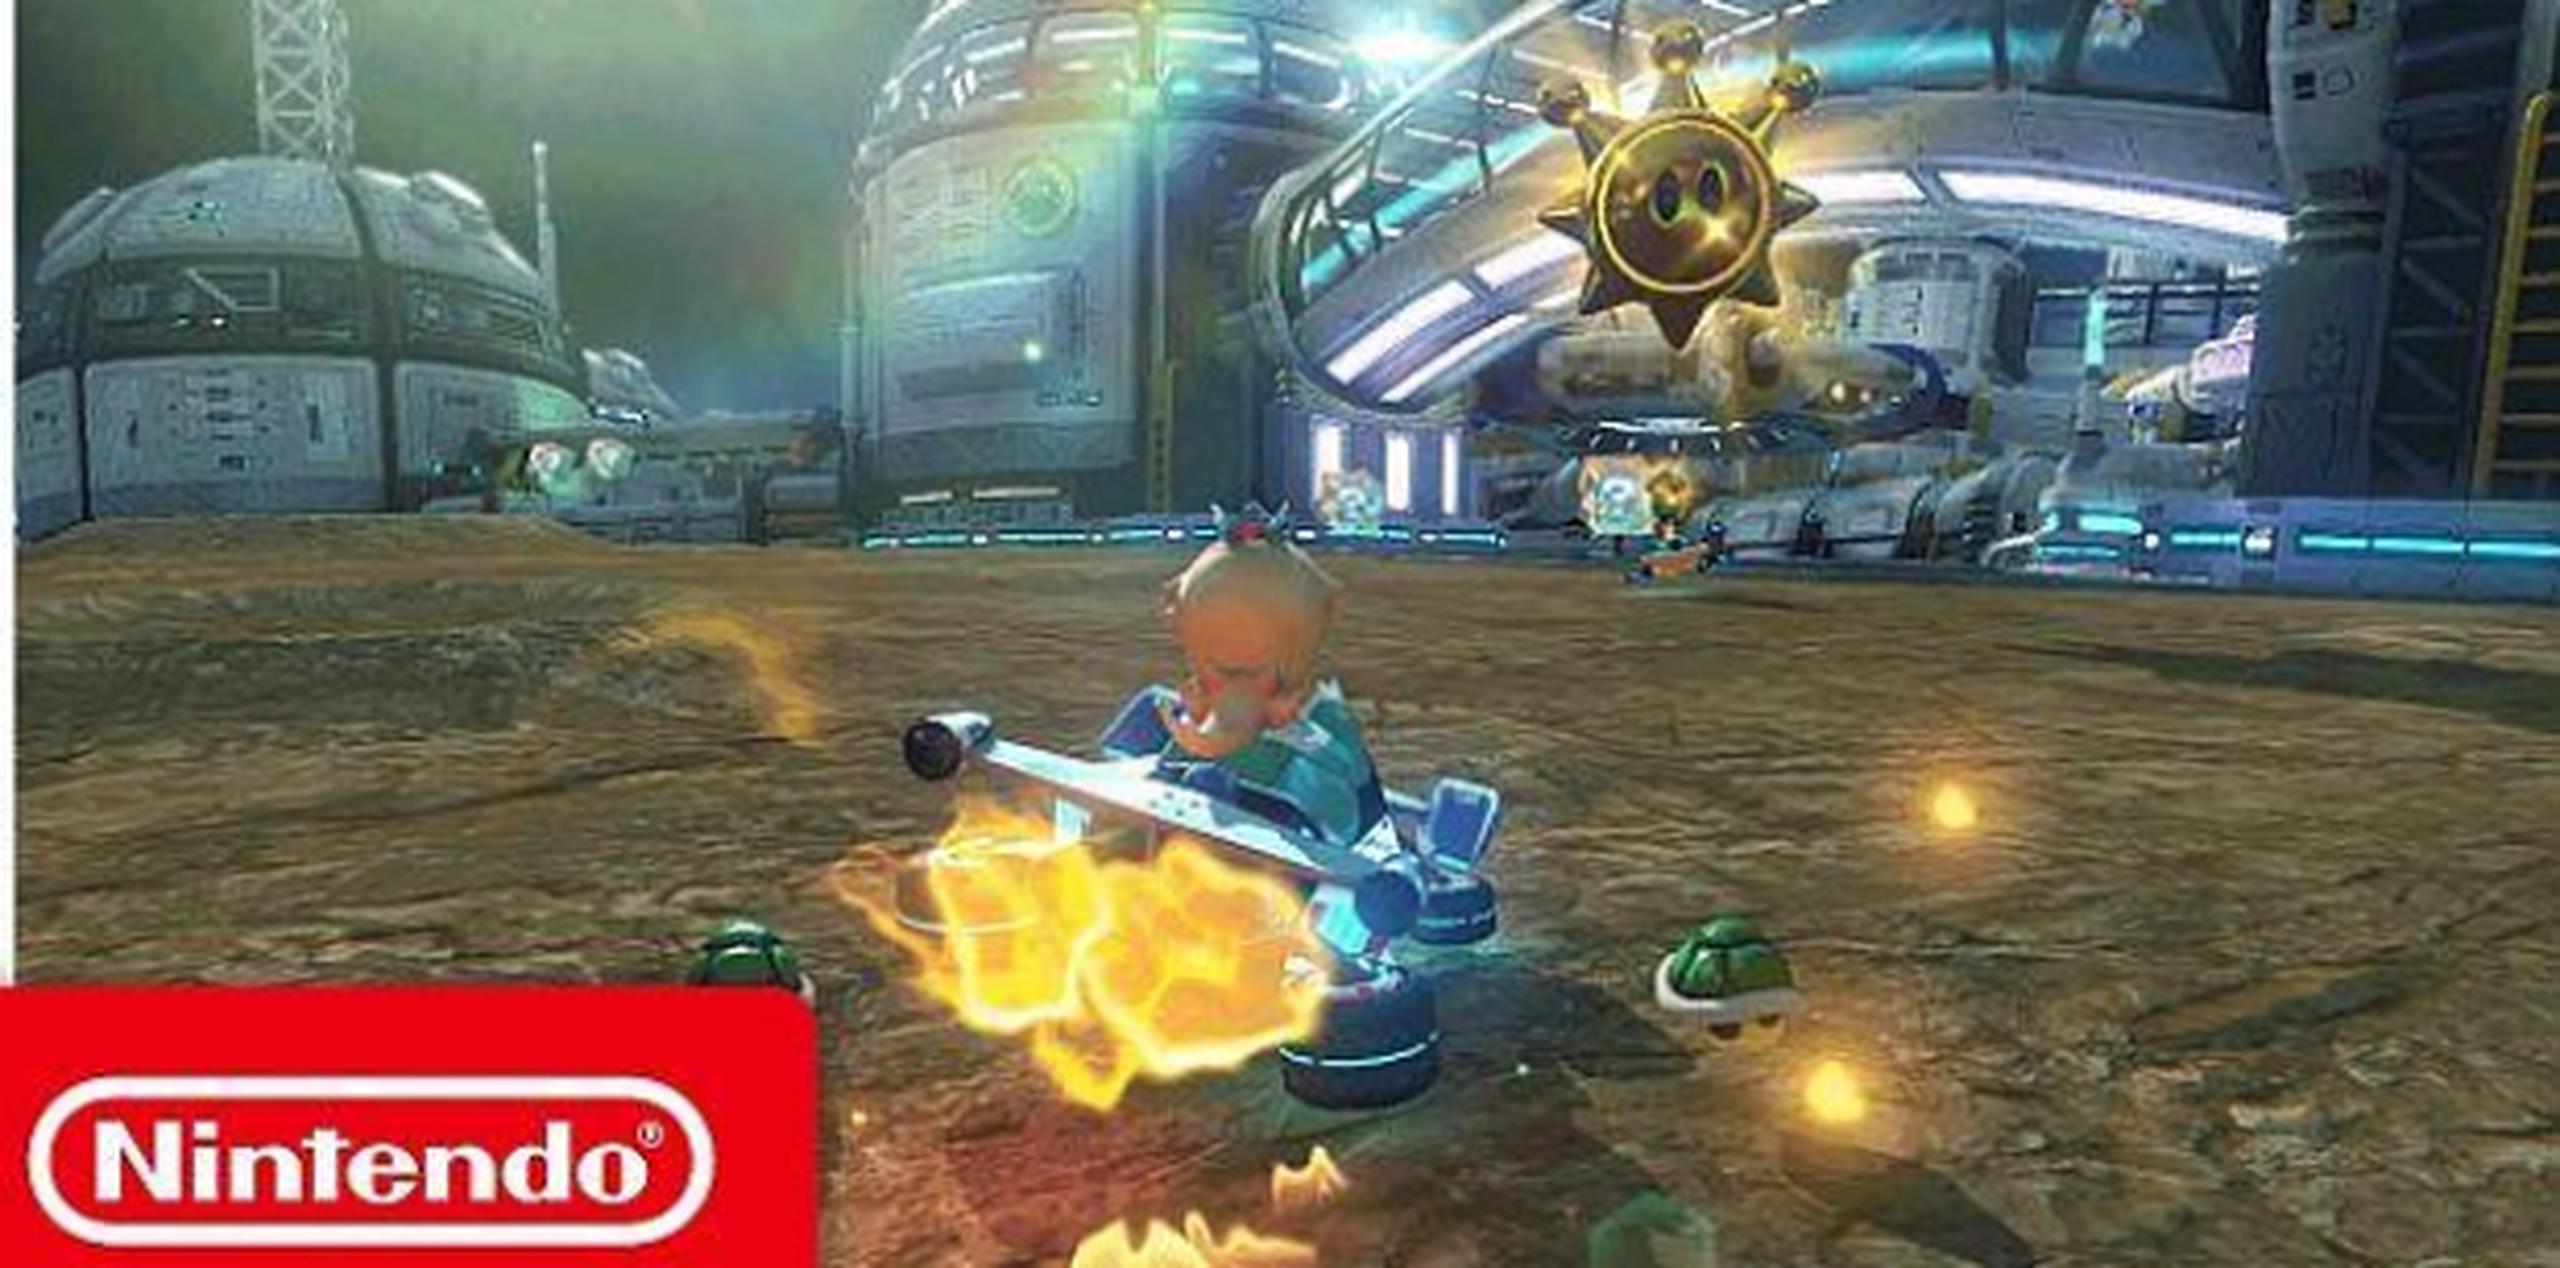 Nintendo compartió el tráiler de Mario Kart 8 Deluxe en su canal de YouTube. (Foto: YouTube)
